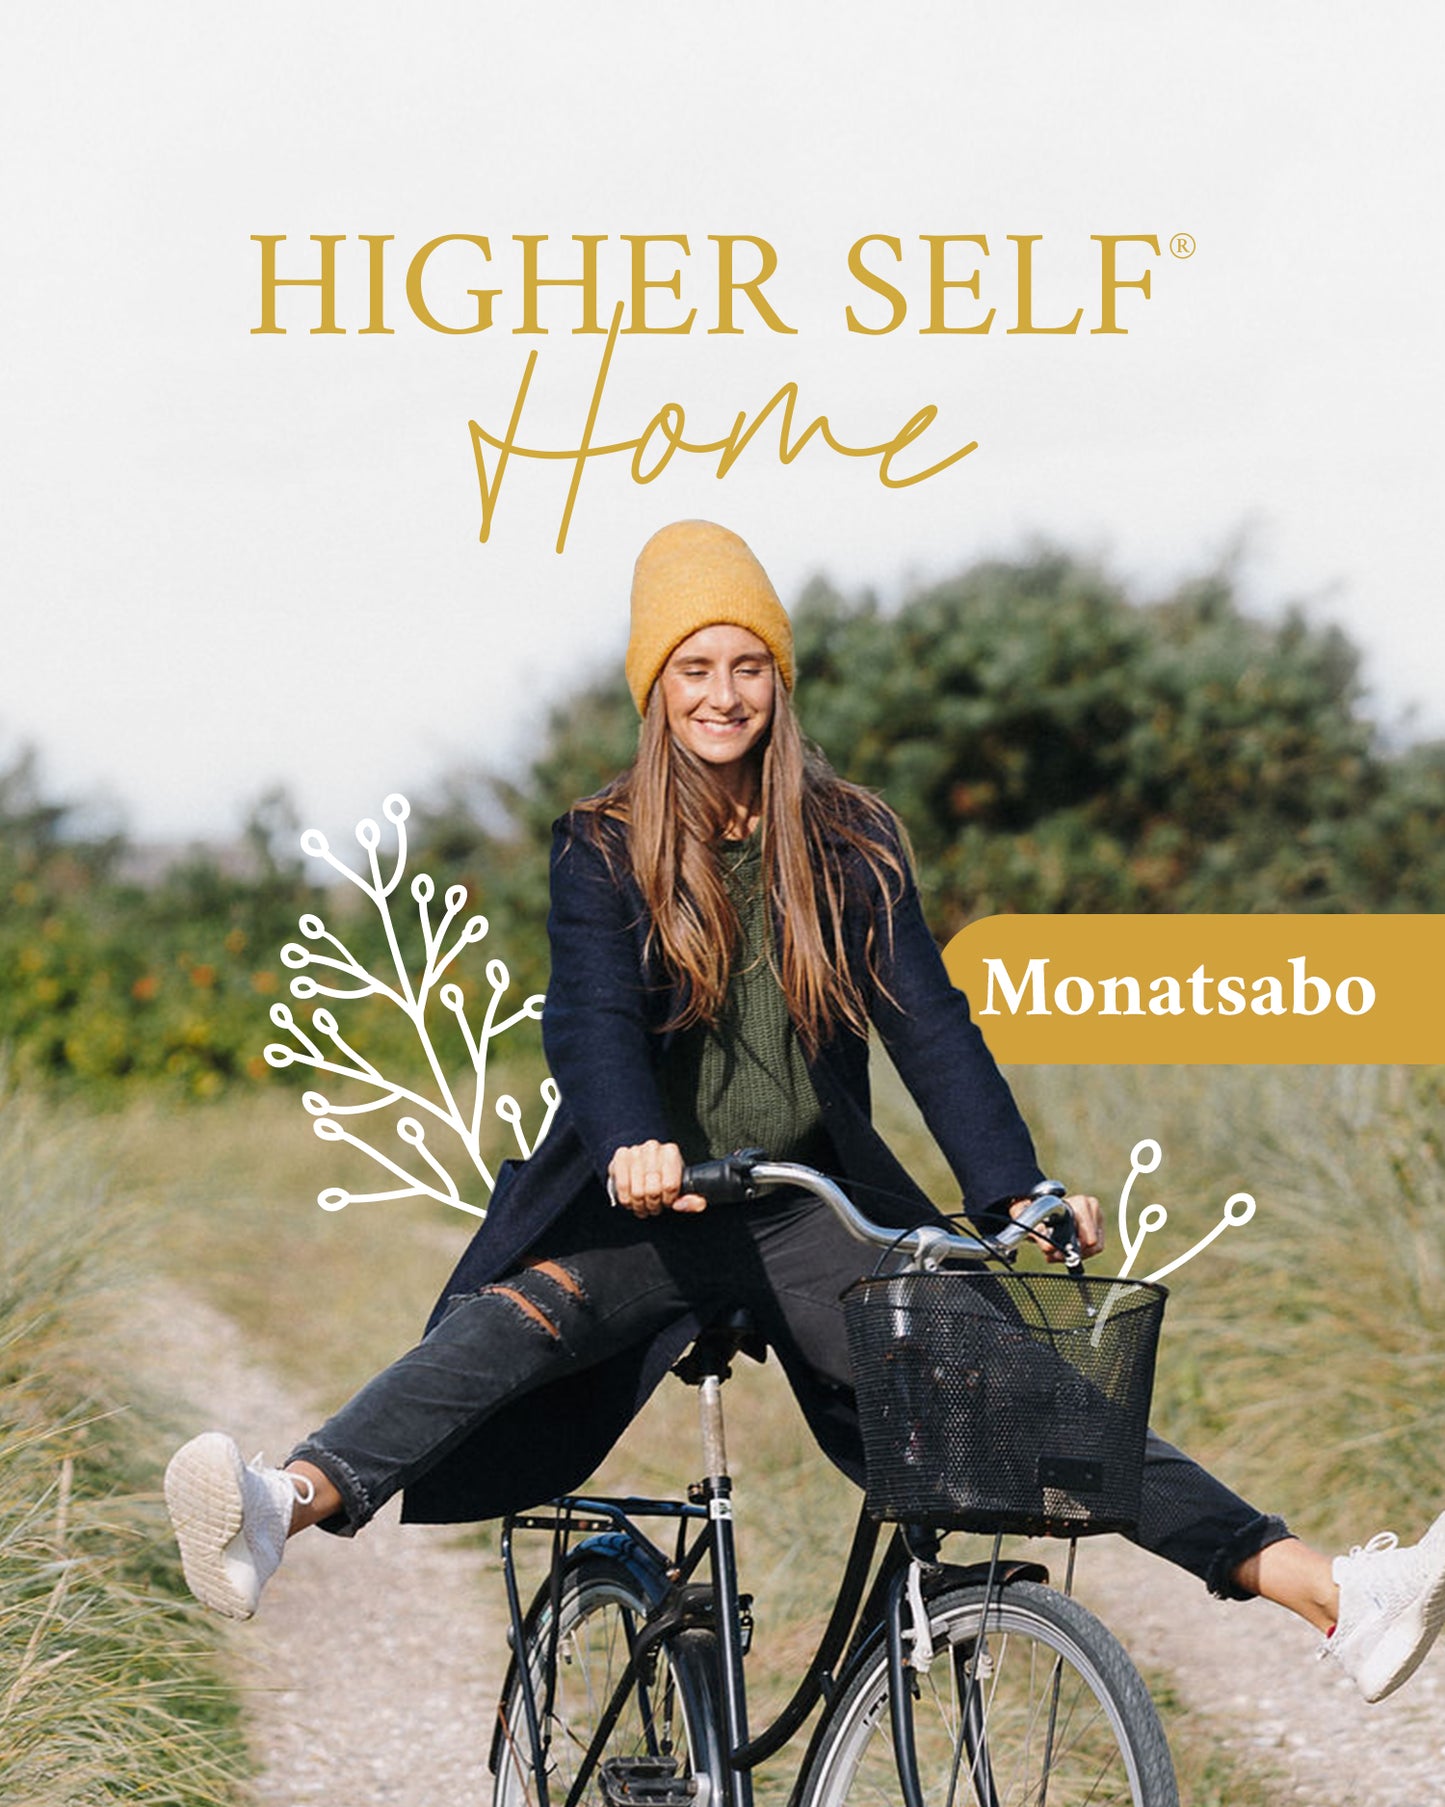 Higher Self Home® – Monatsabo